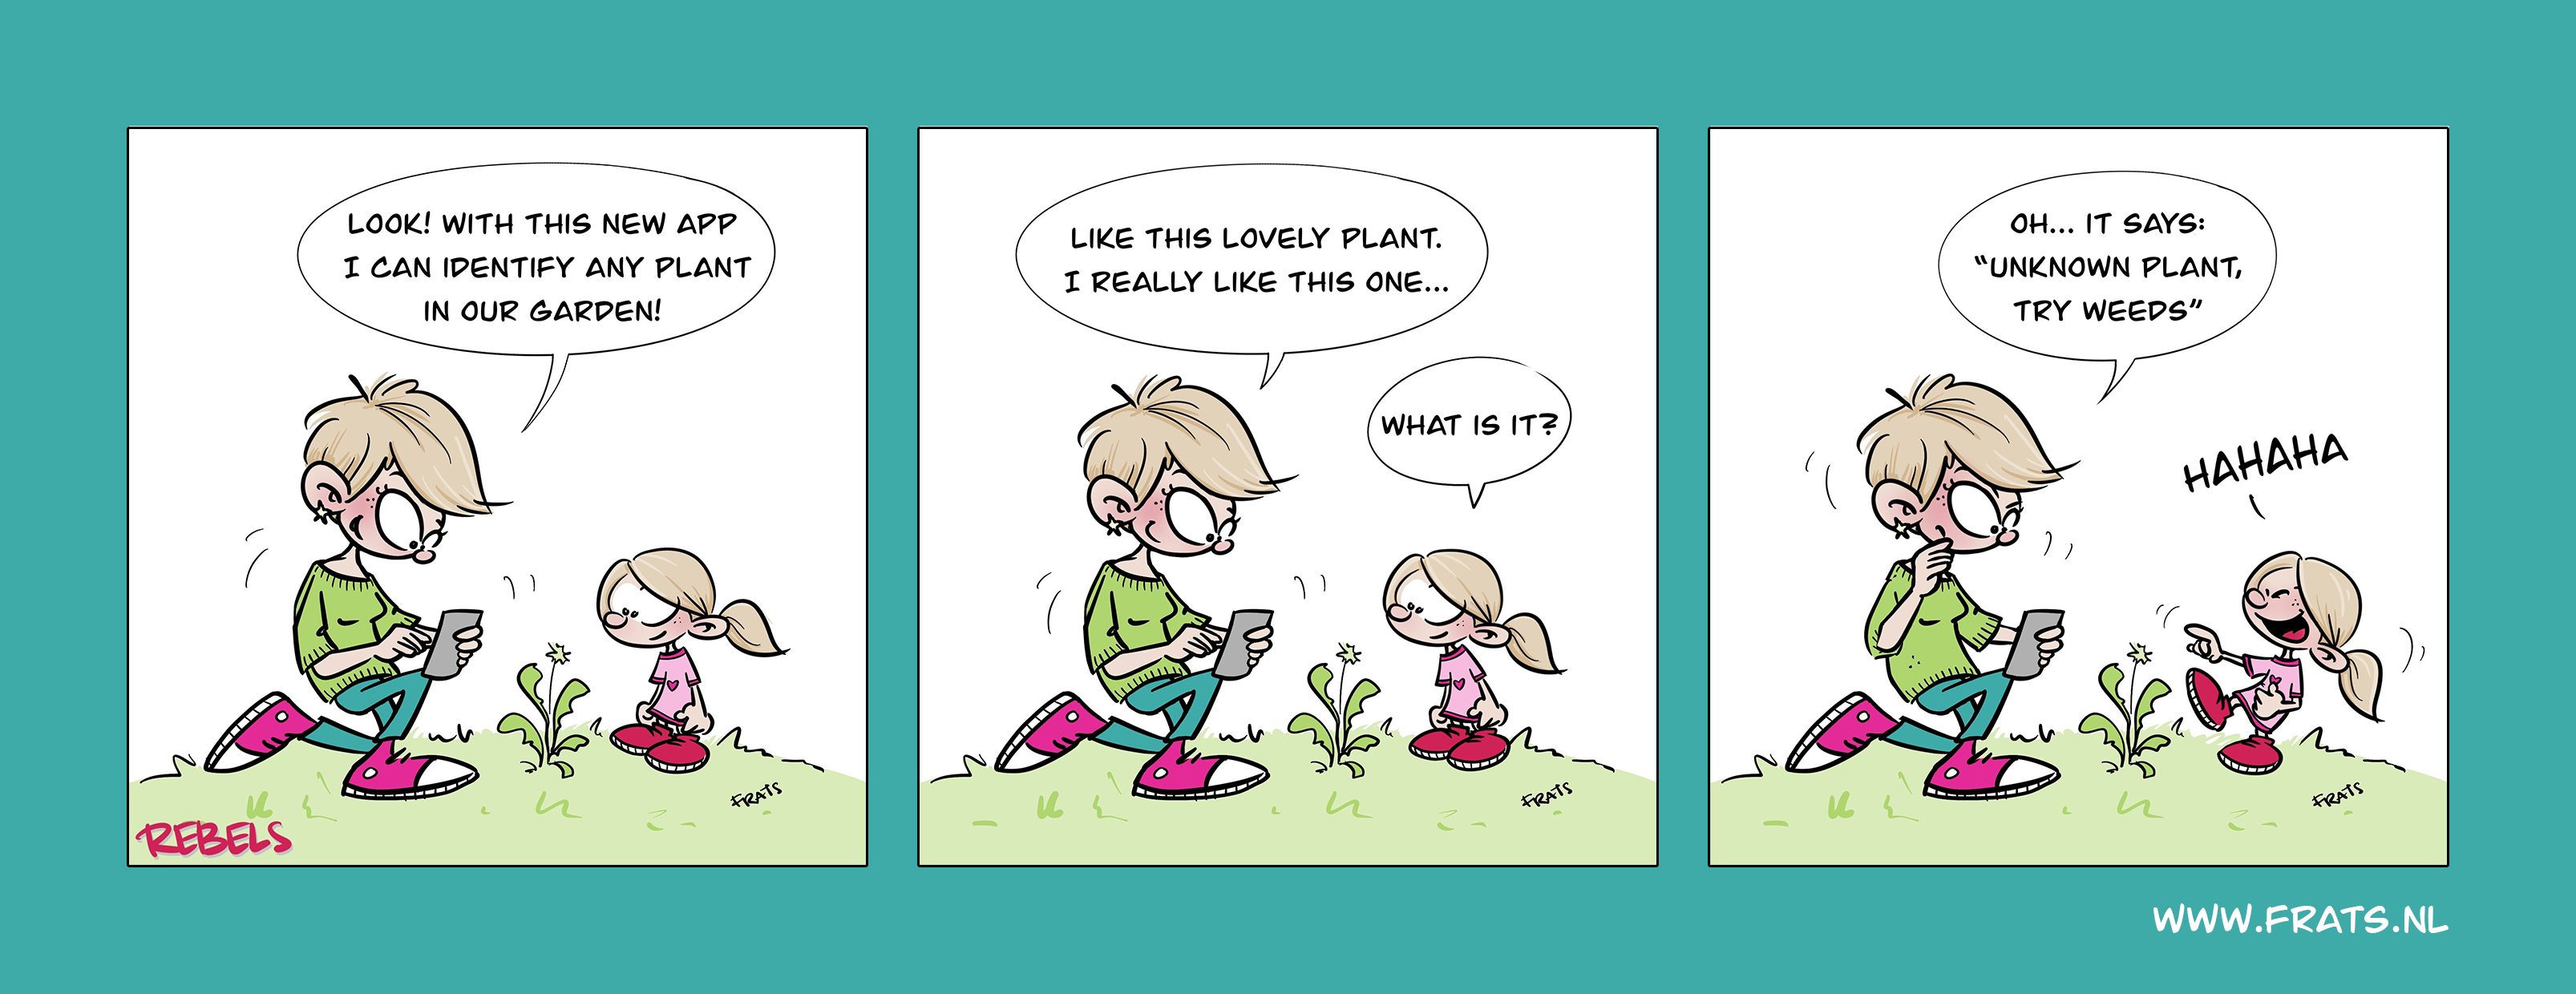 Rebels comic strip about gardening